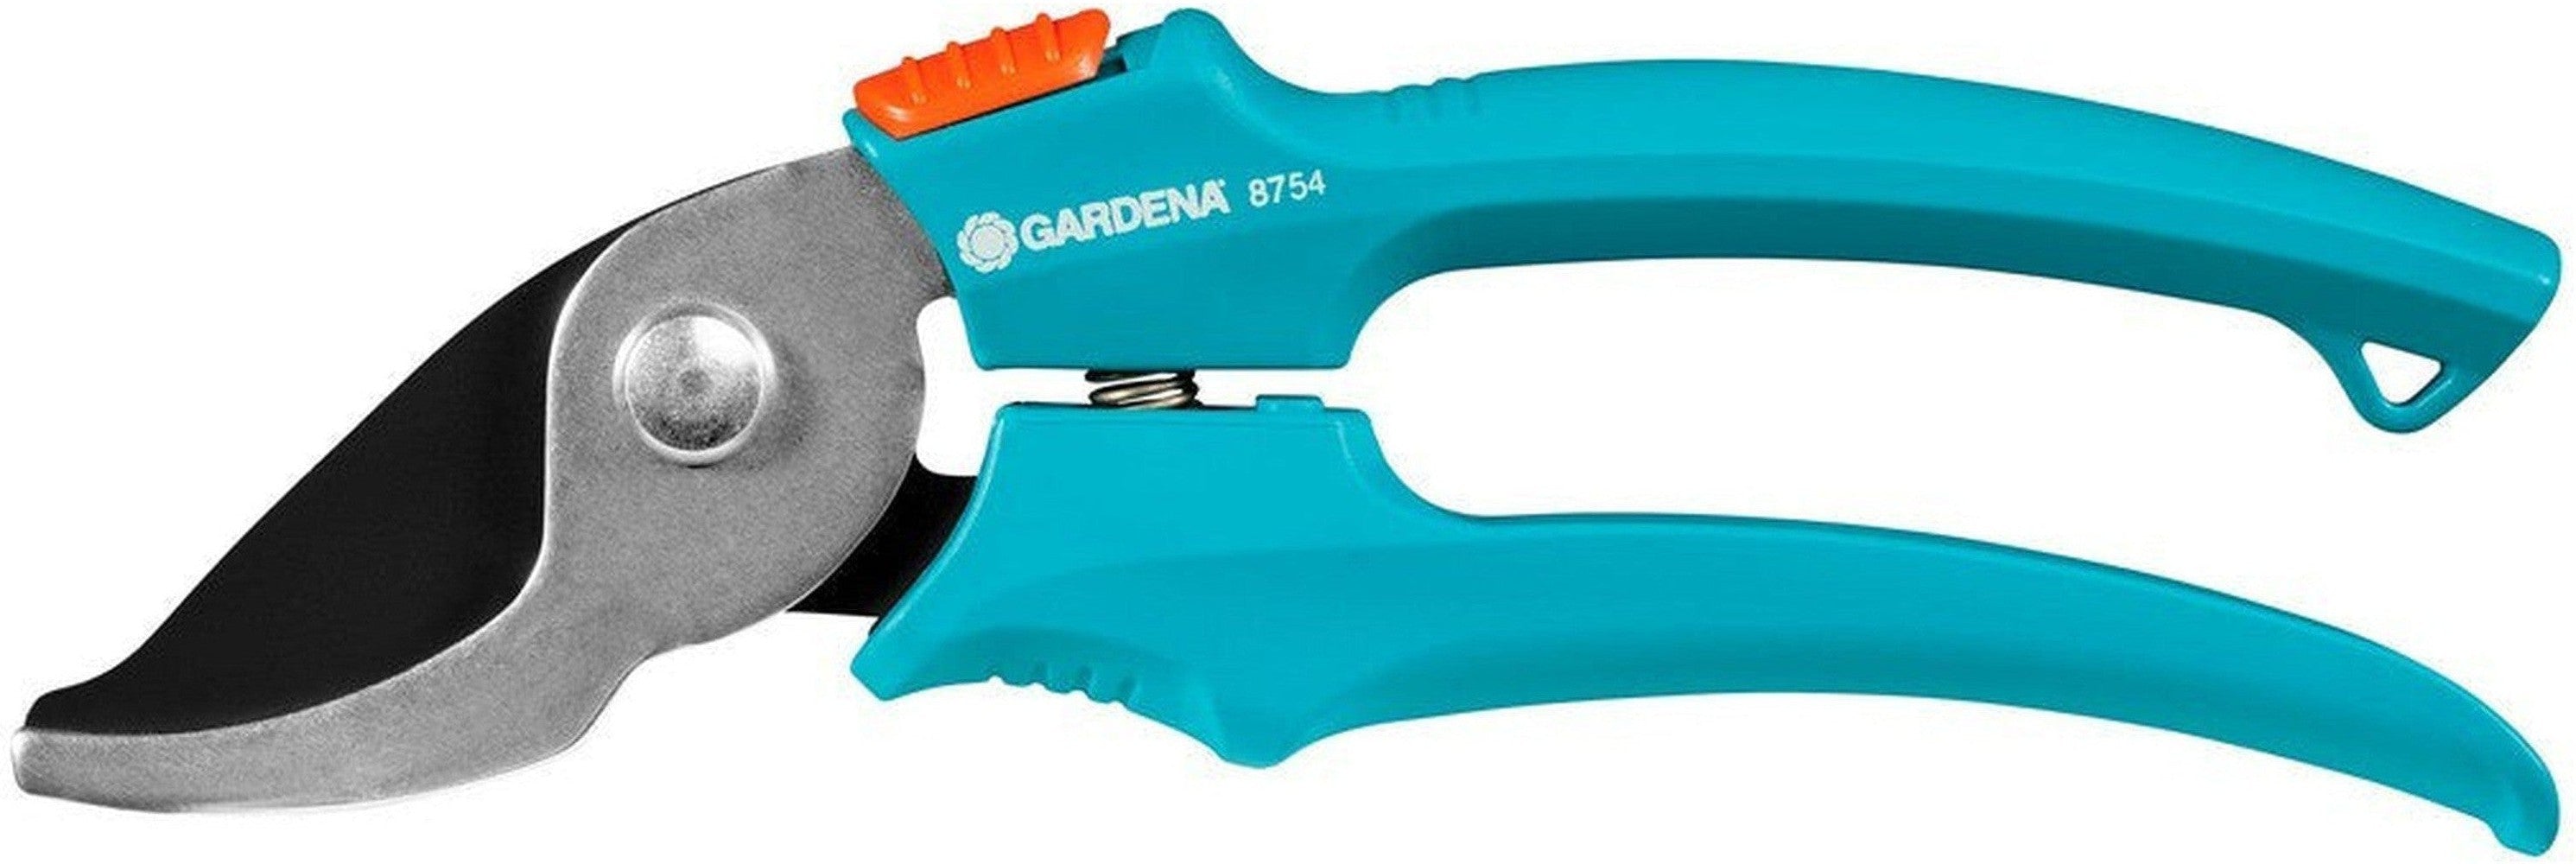 修剪剪毛gardena 8754-30 18毫米